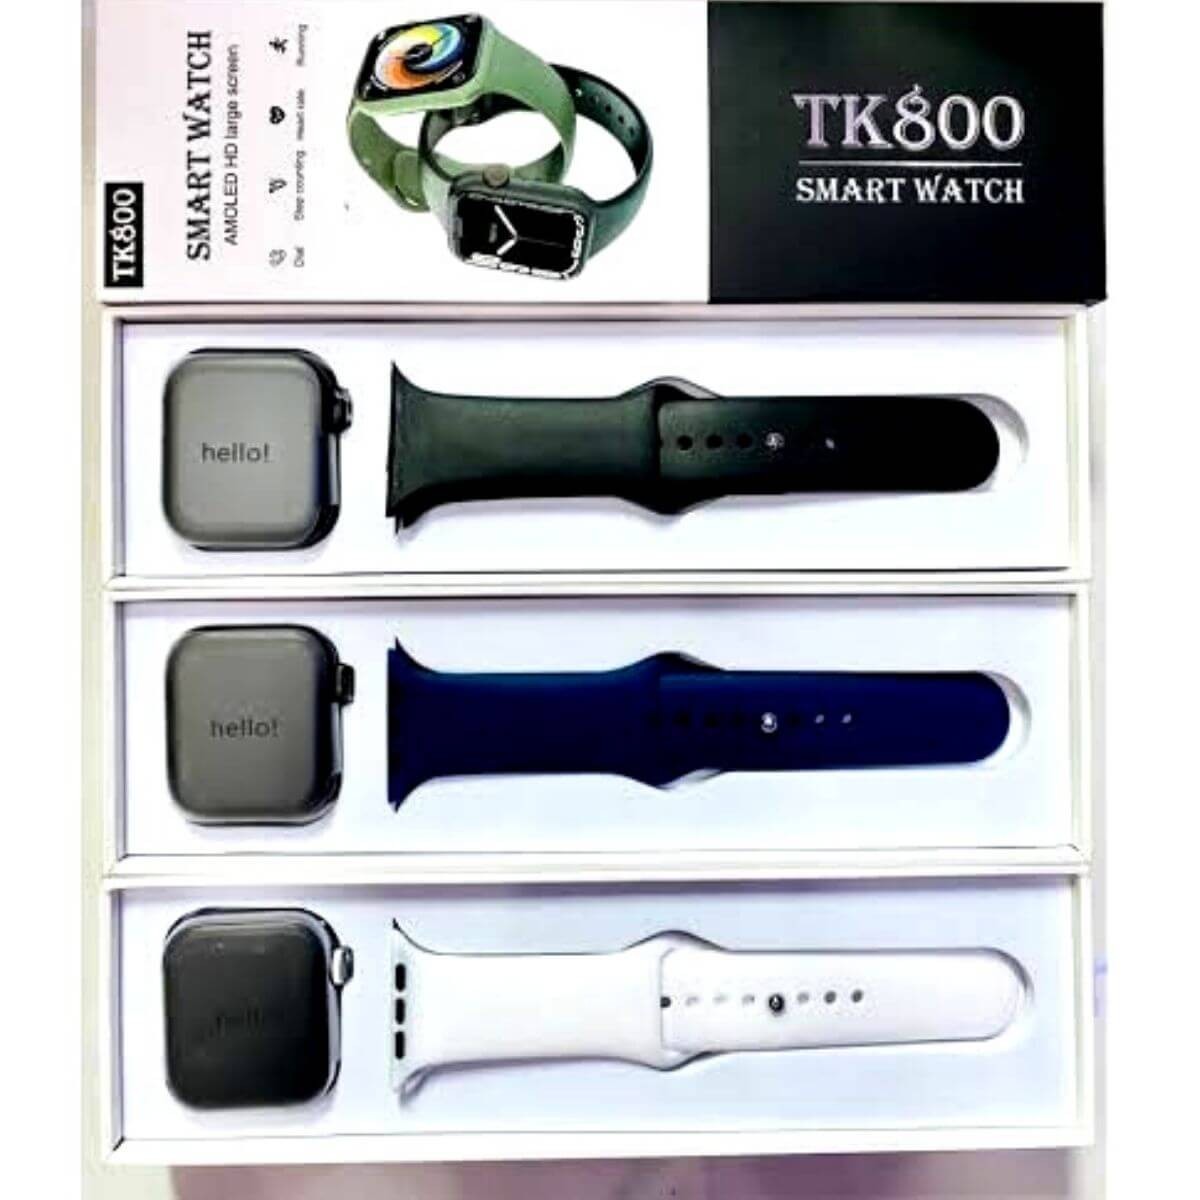 TK800 Smart Watch BD